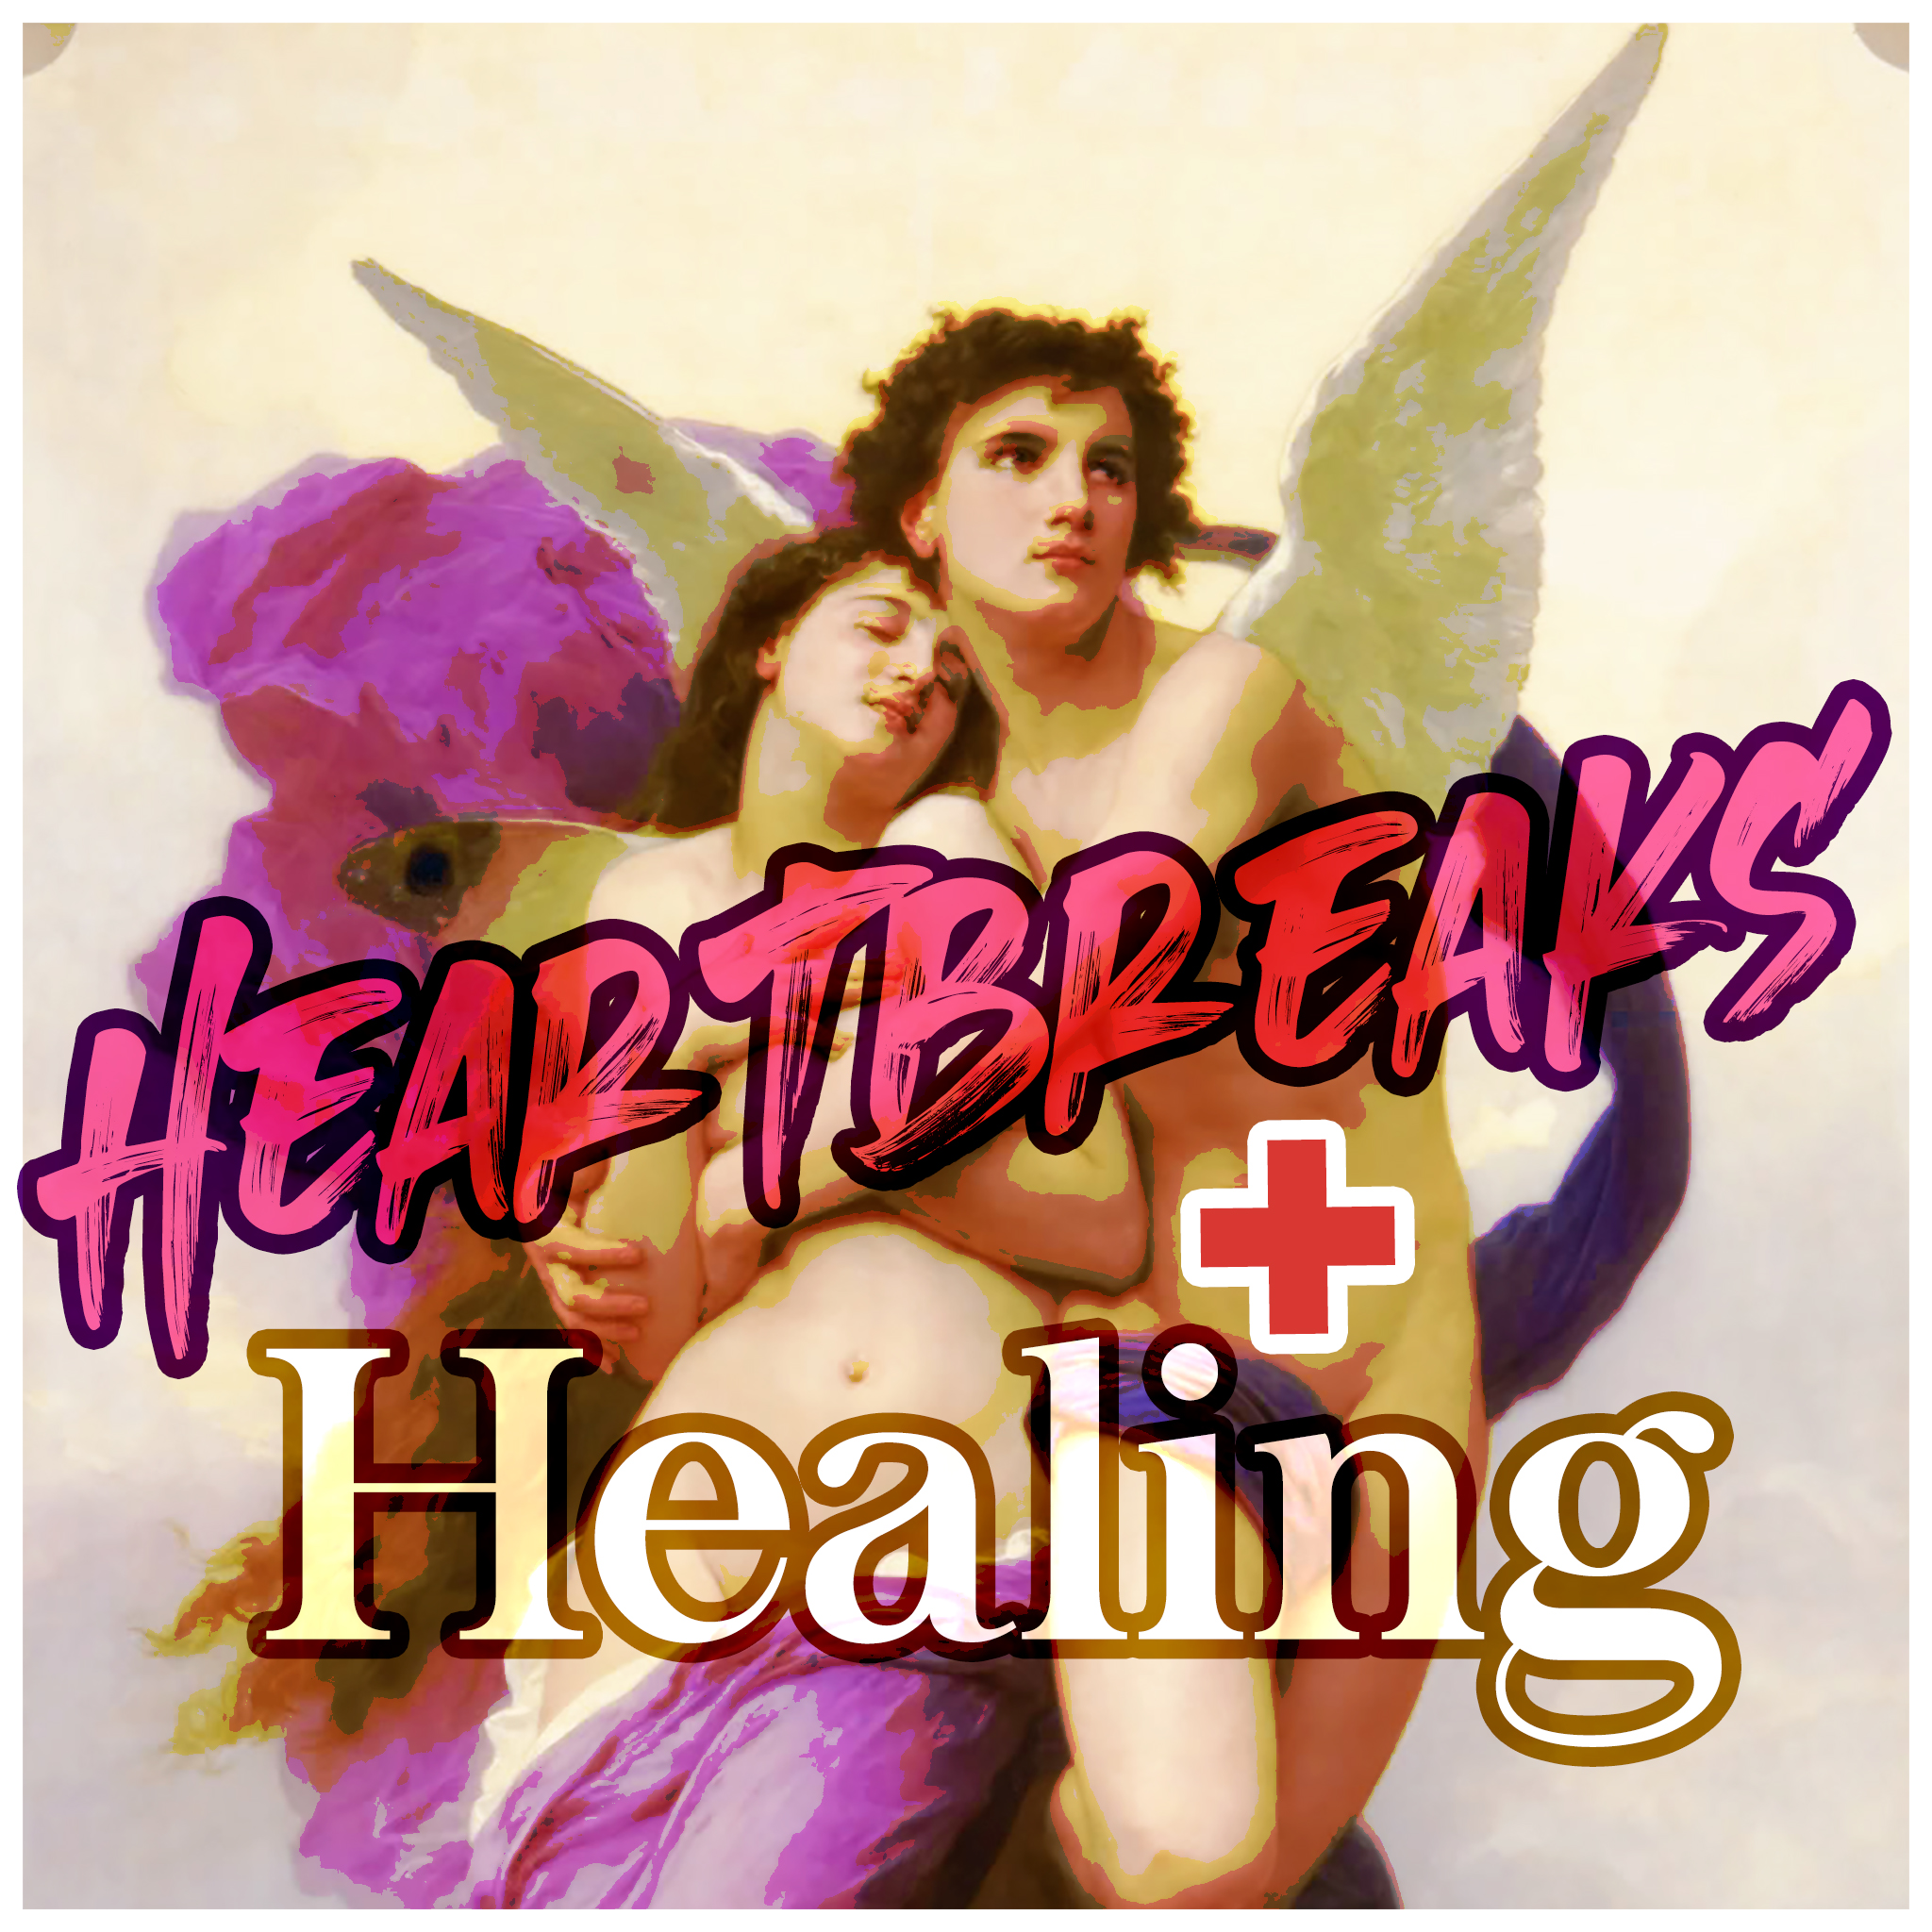 Heartbreaks and Healing